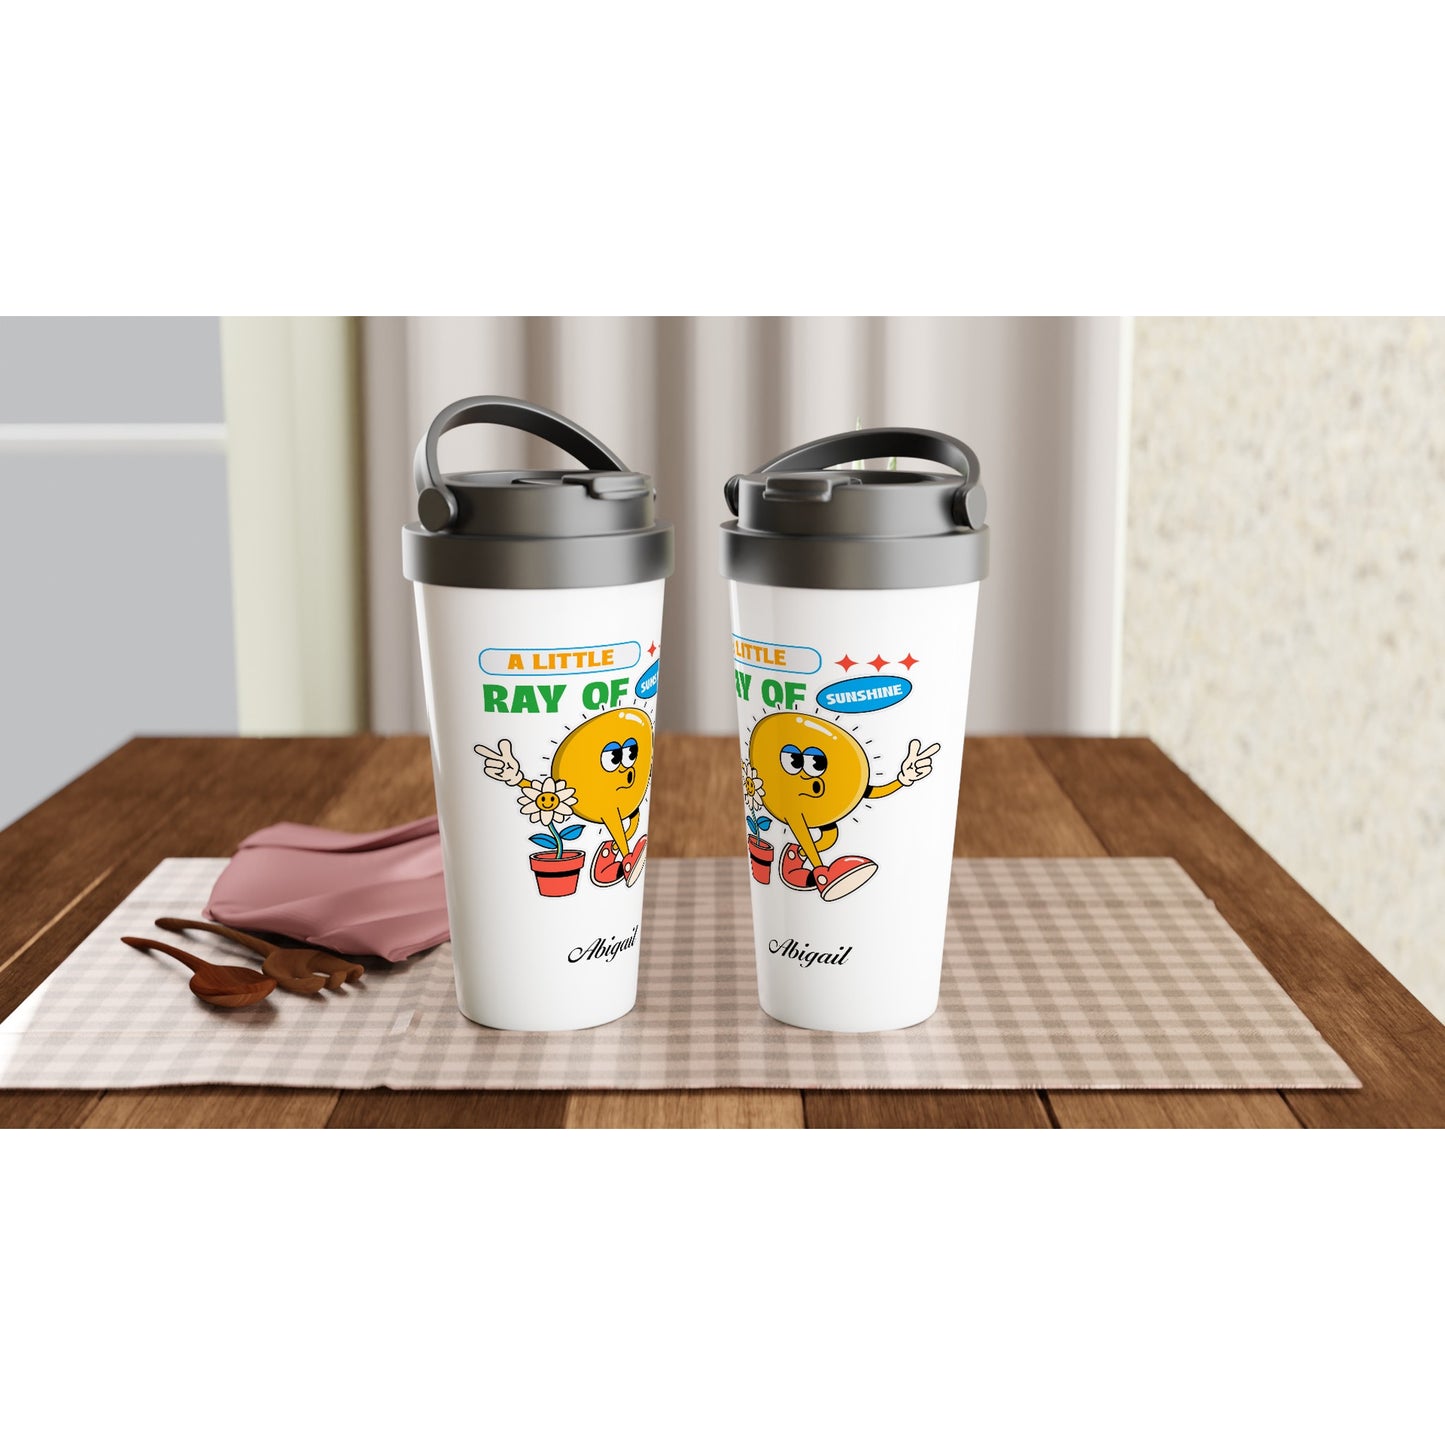 Personalise - A Little Ray Of Sunshine - White 15oz Stainless Steel Travel Mug Personalised Travel Mug customise personalise